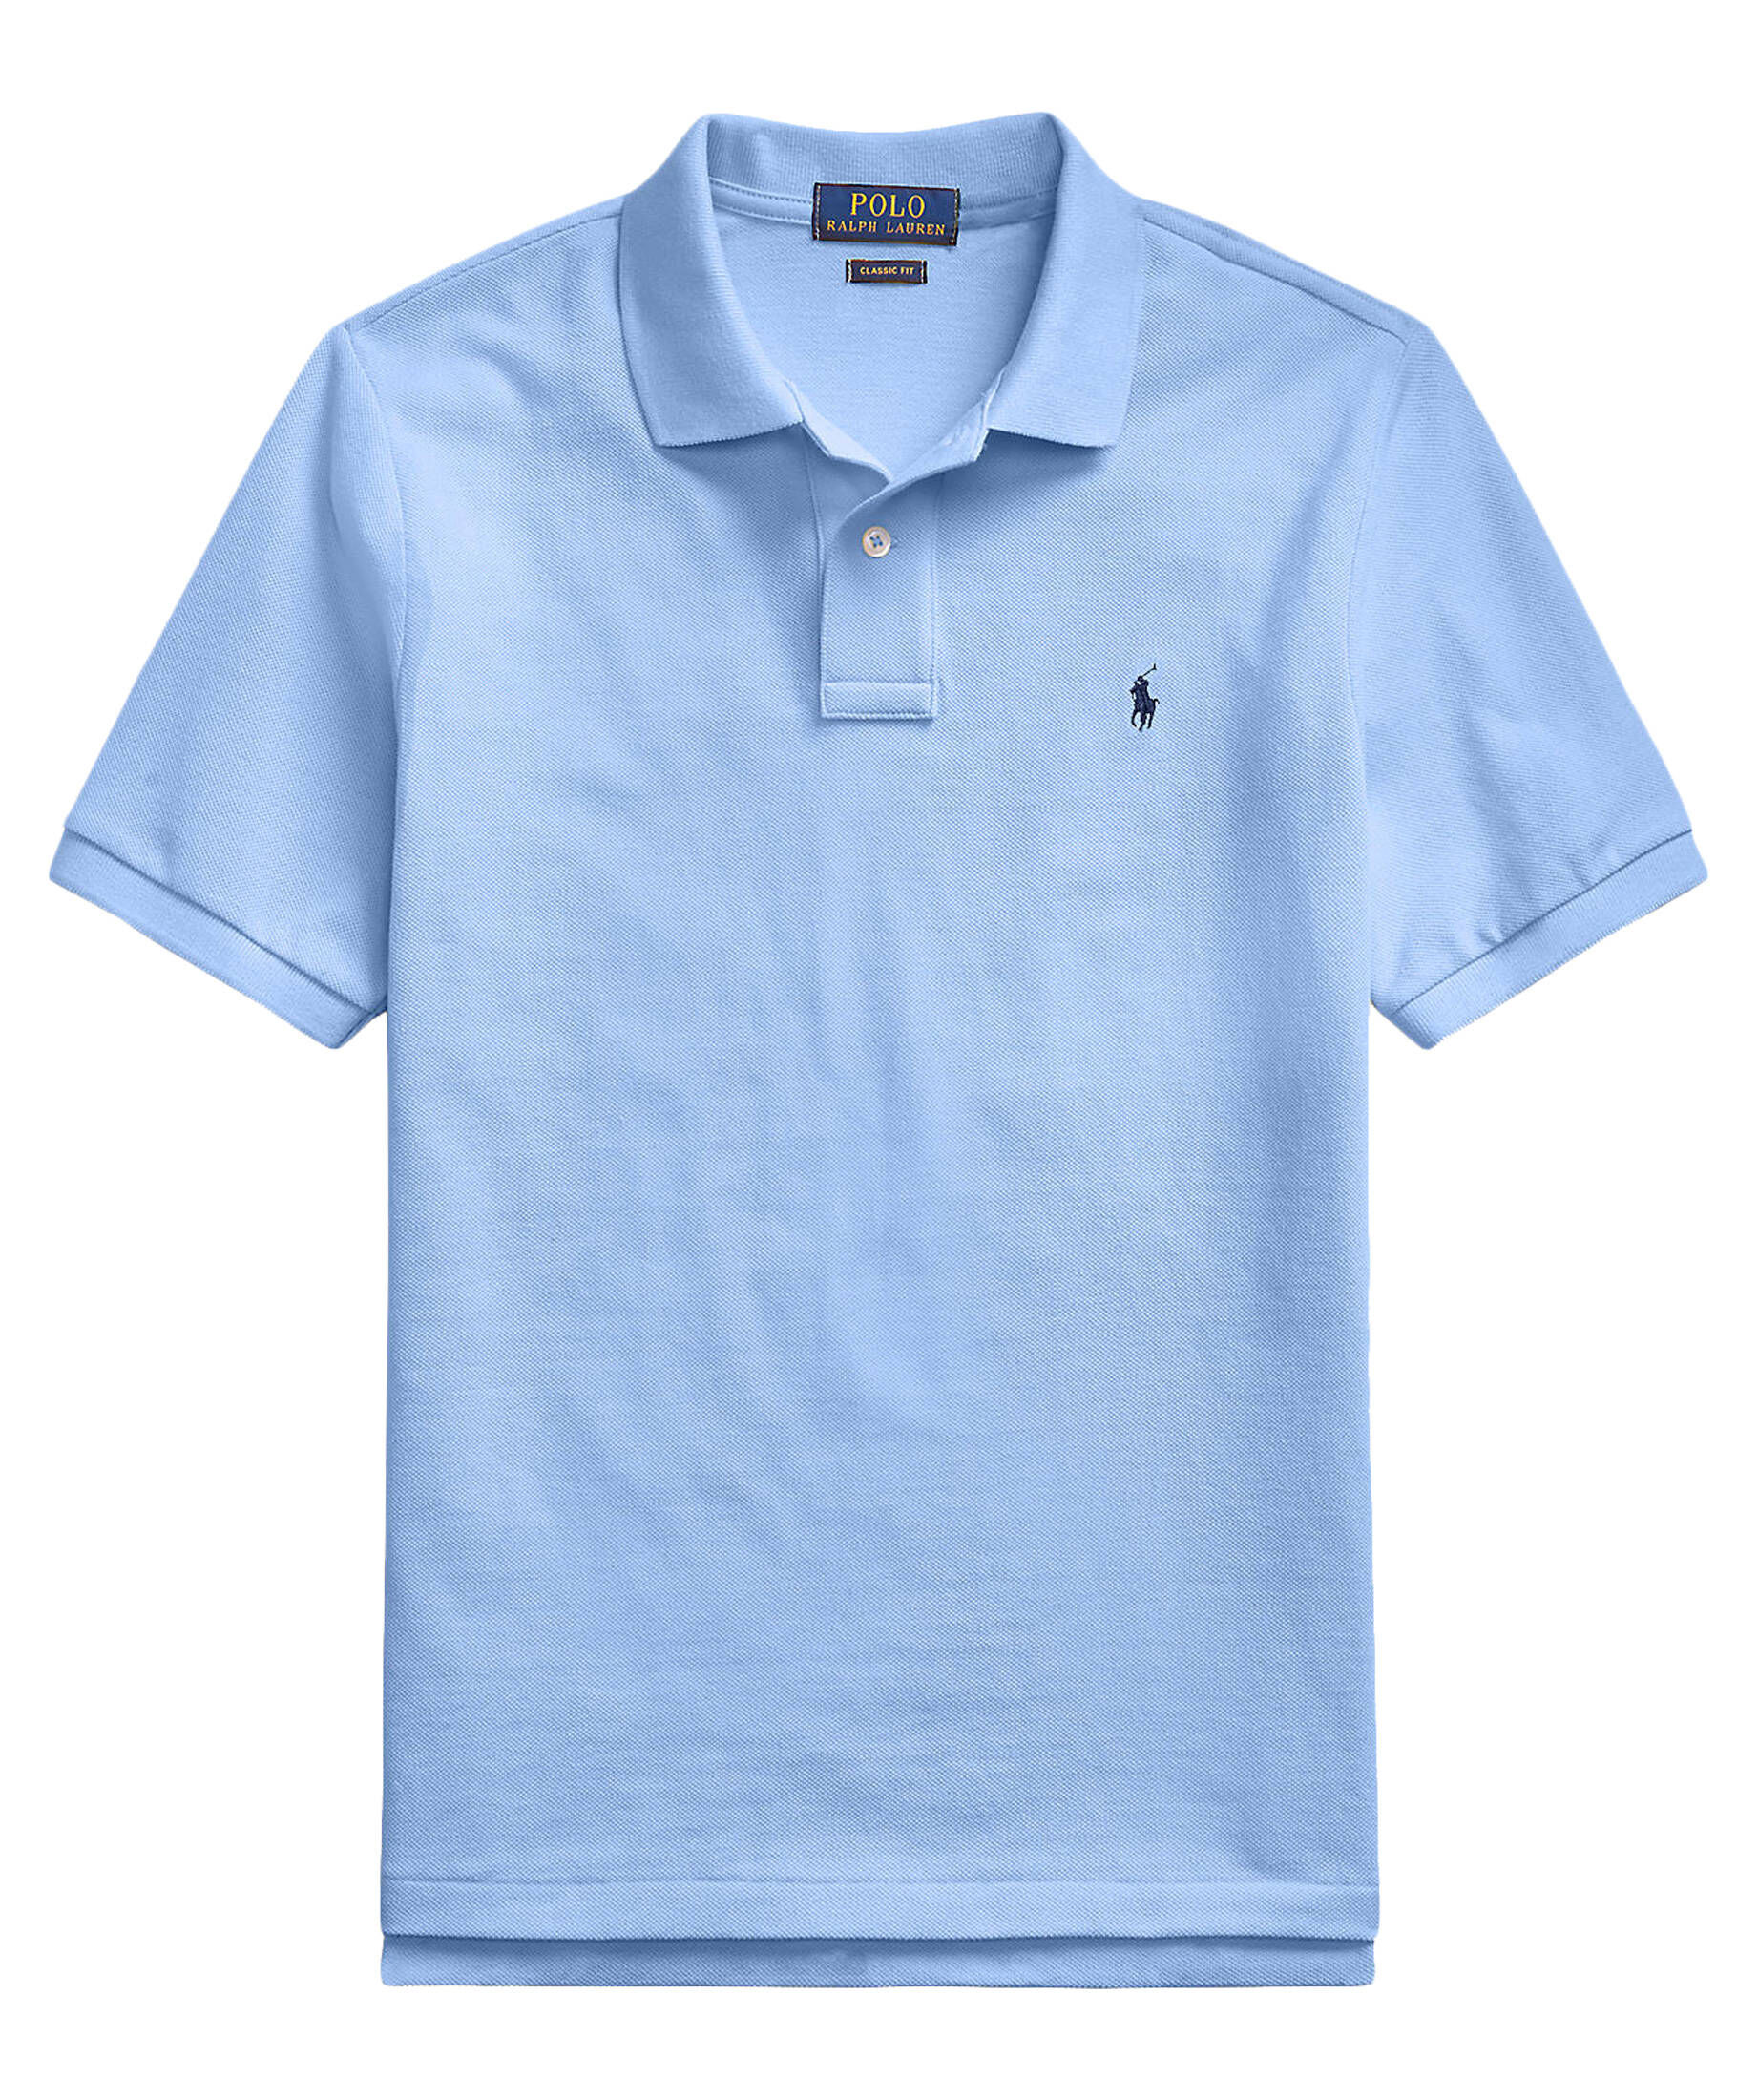 Polo Ralph Lauren Jungen Poloshirt Gr DE 128 Jungen Bekleidung Shirts Poloshirts 